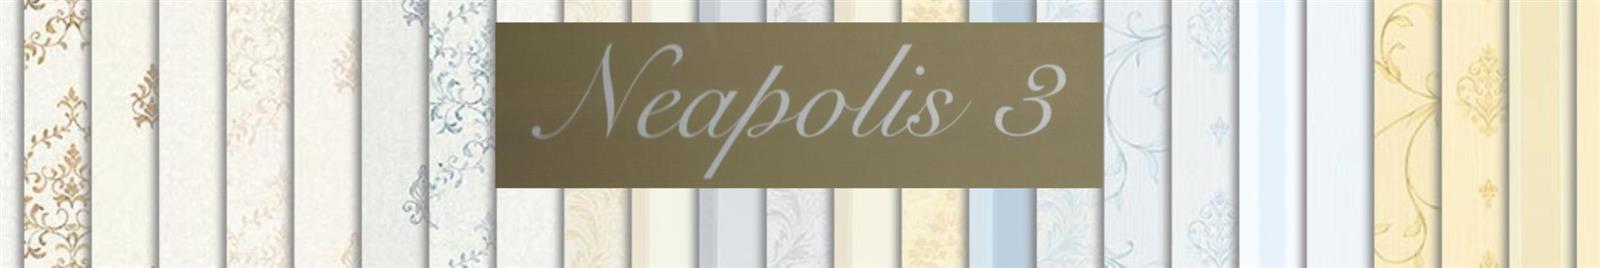 Neapolis 3